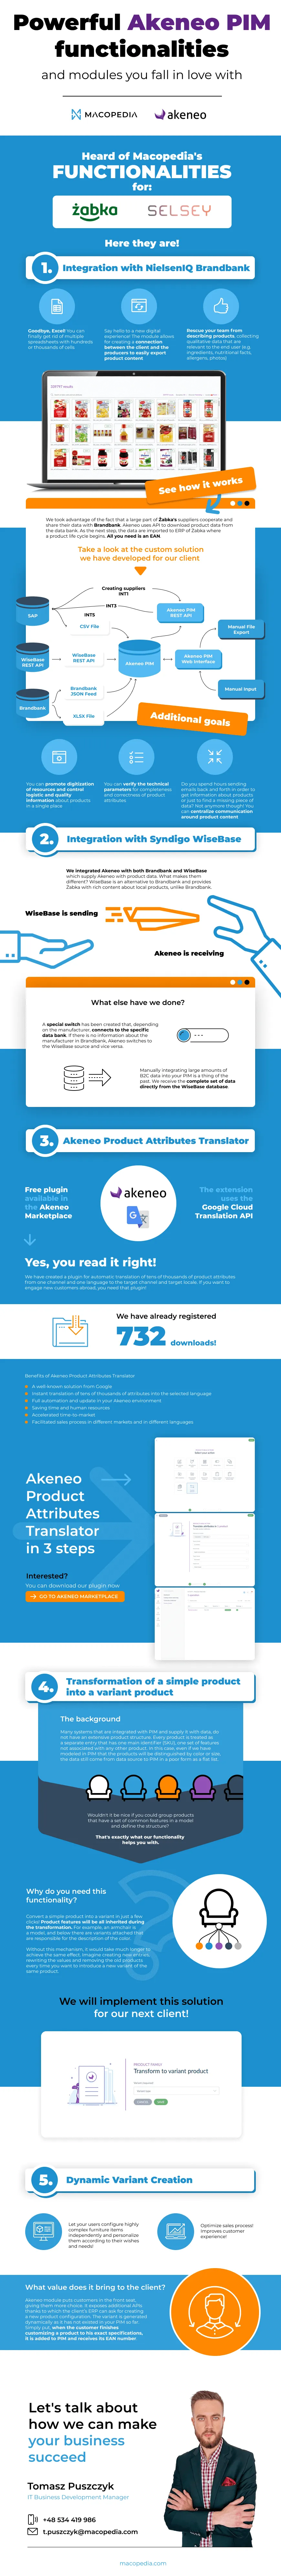 Infographic Akeneo functionalities